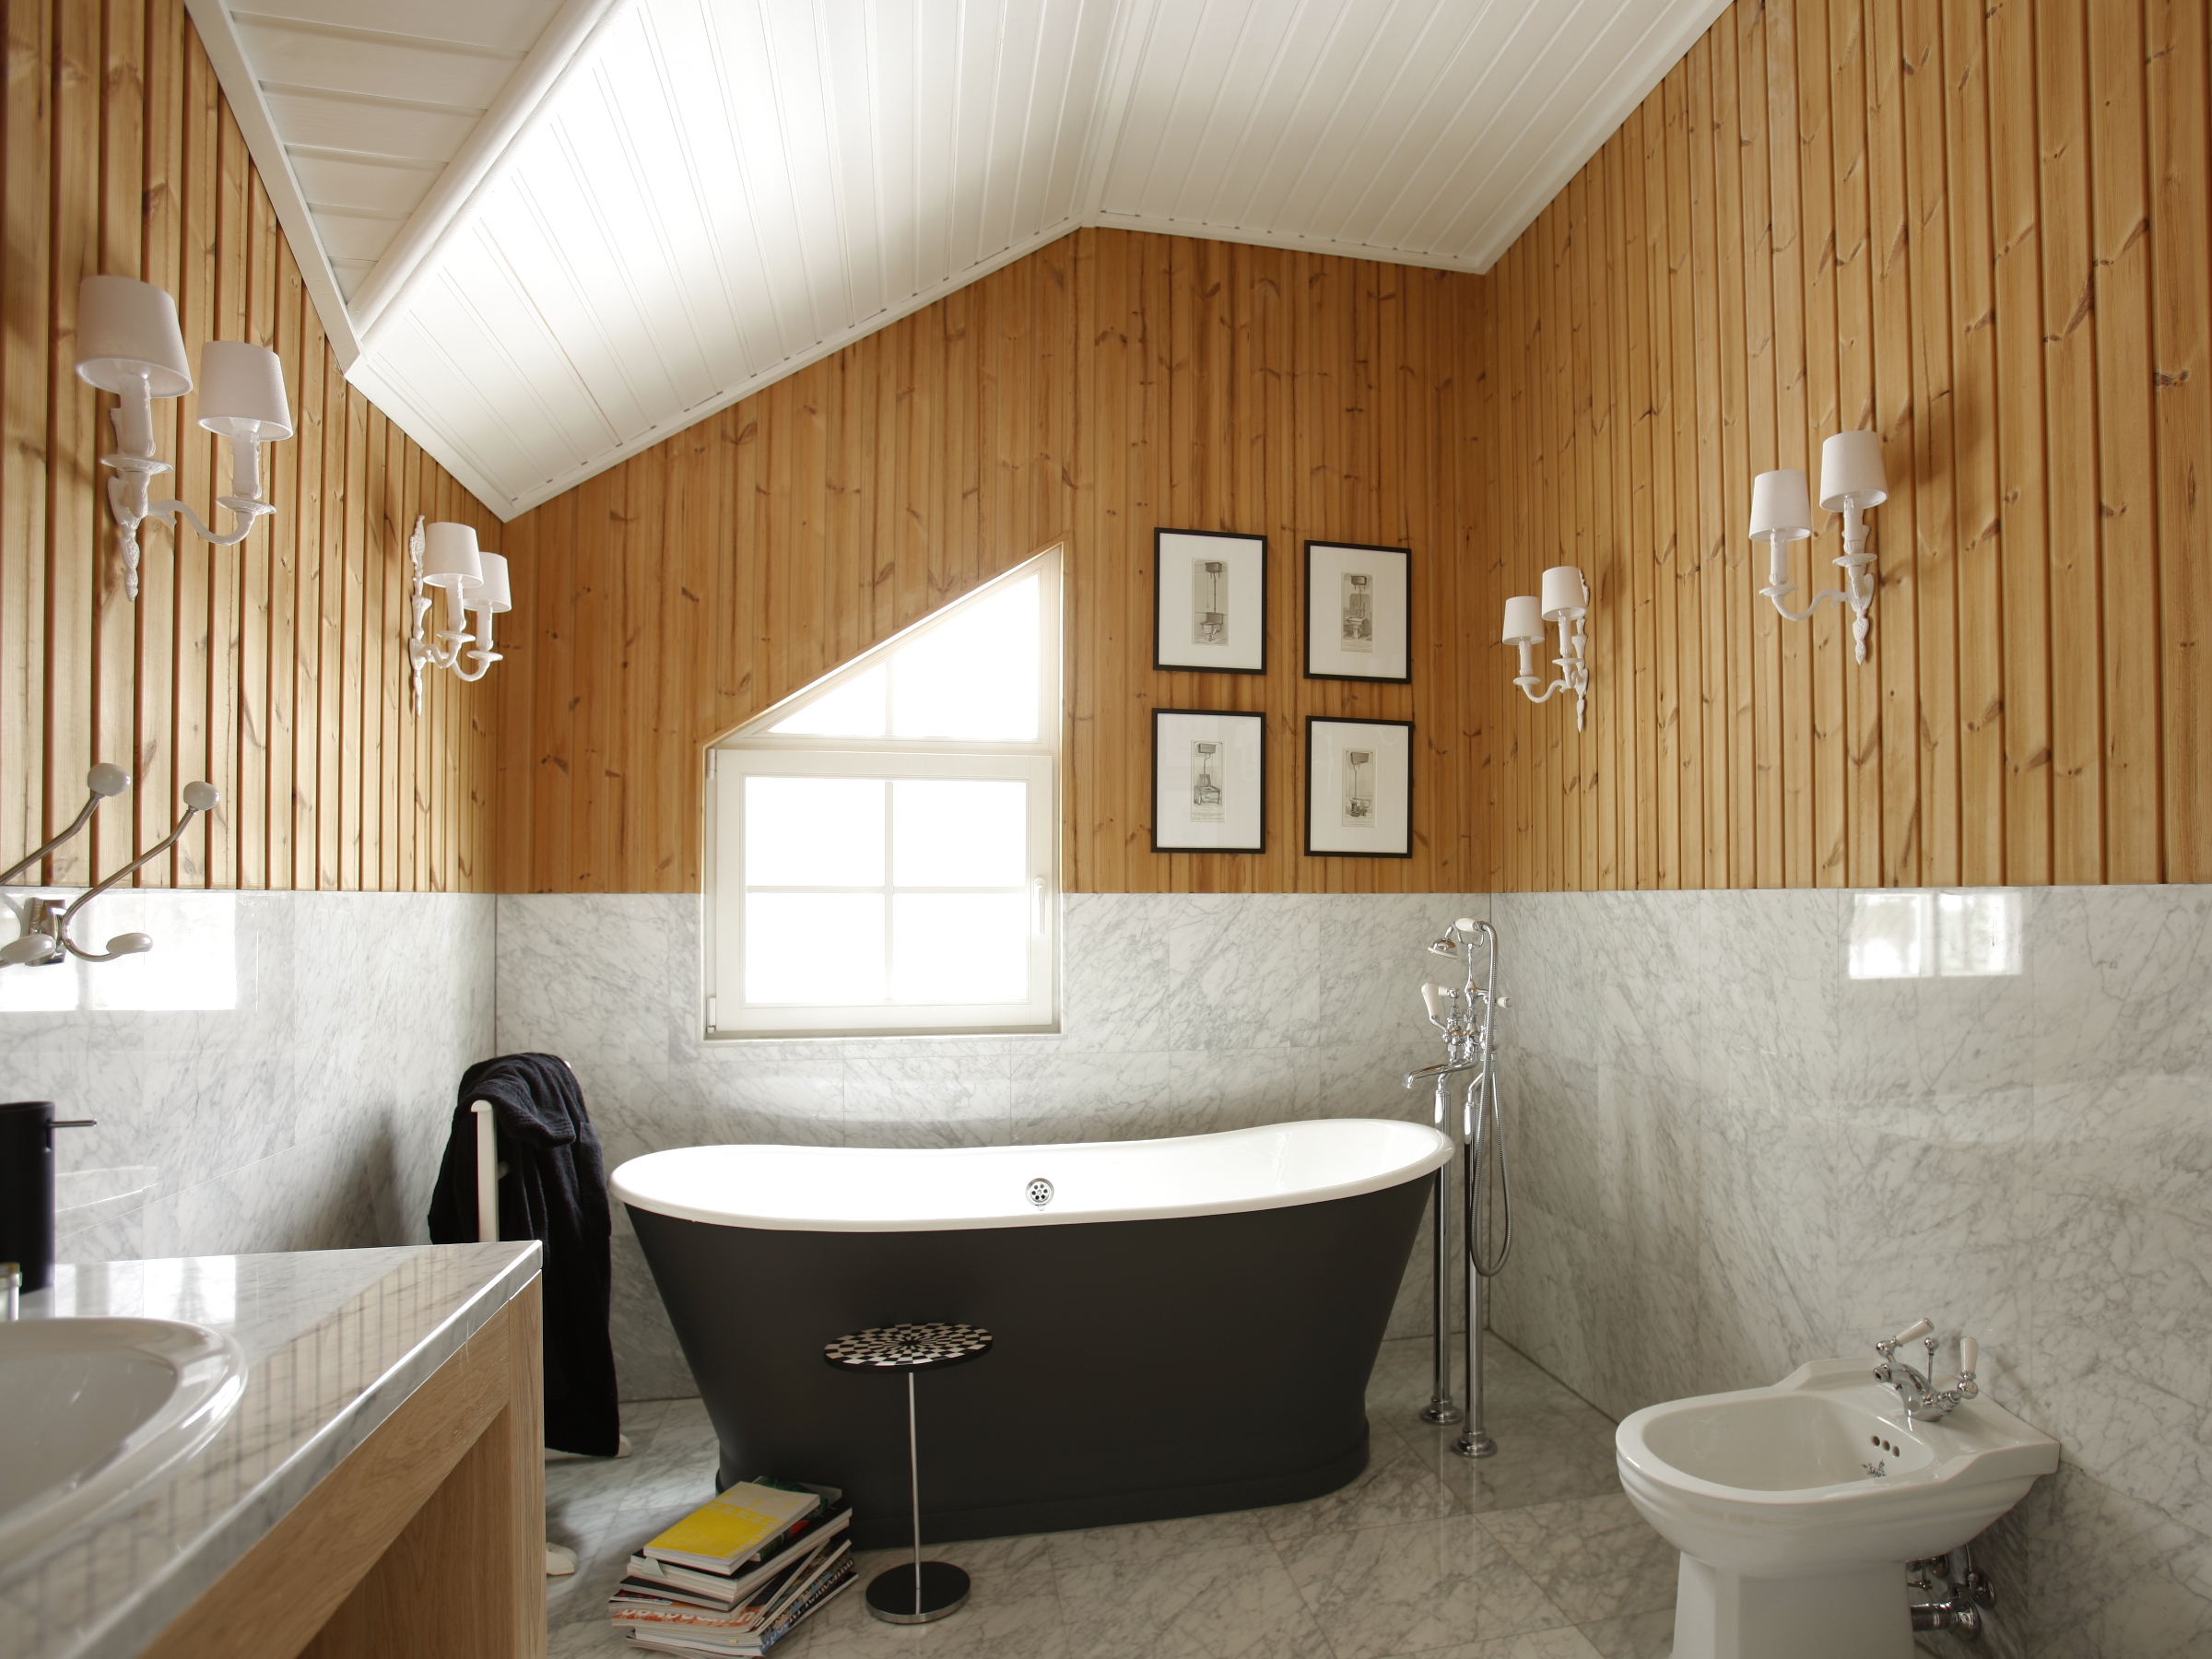 Отделка ванной в деревянном частном доме, даче, коттедже